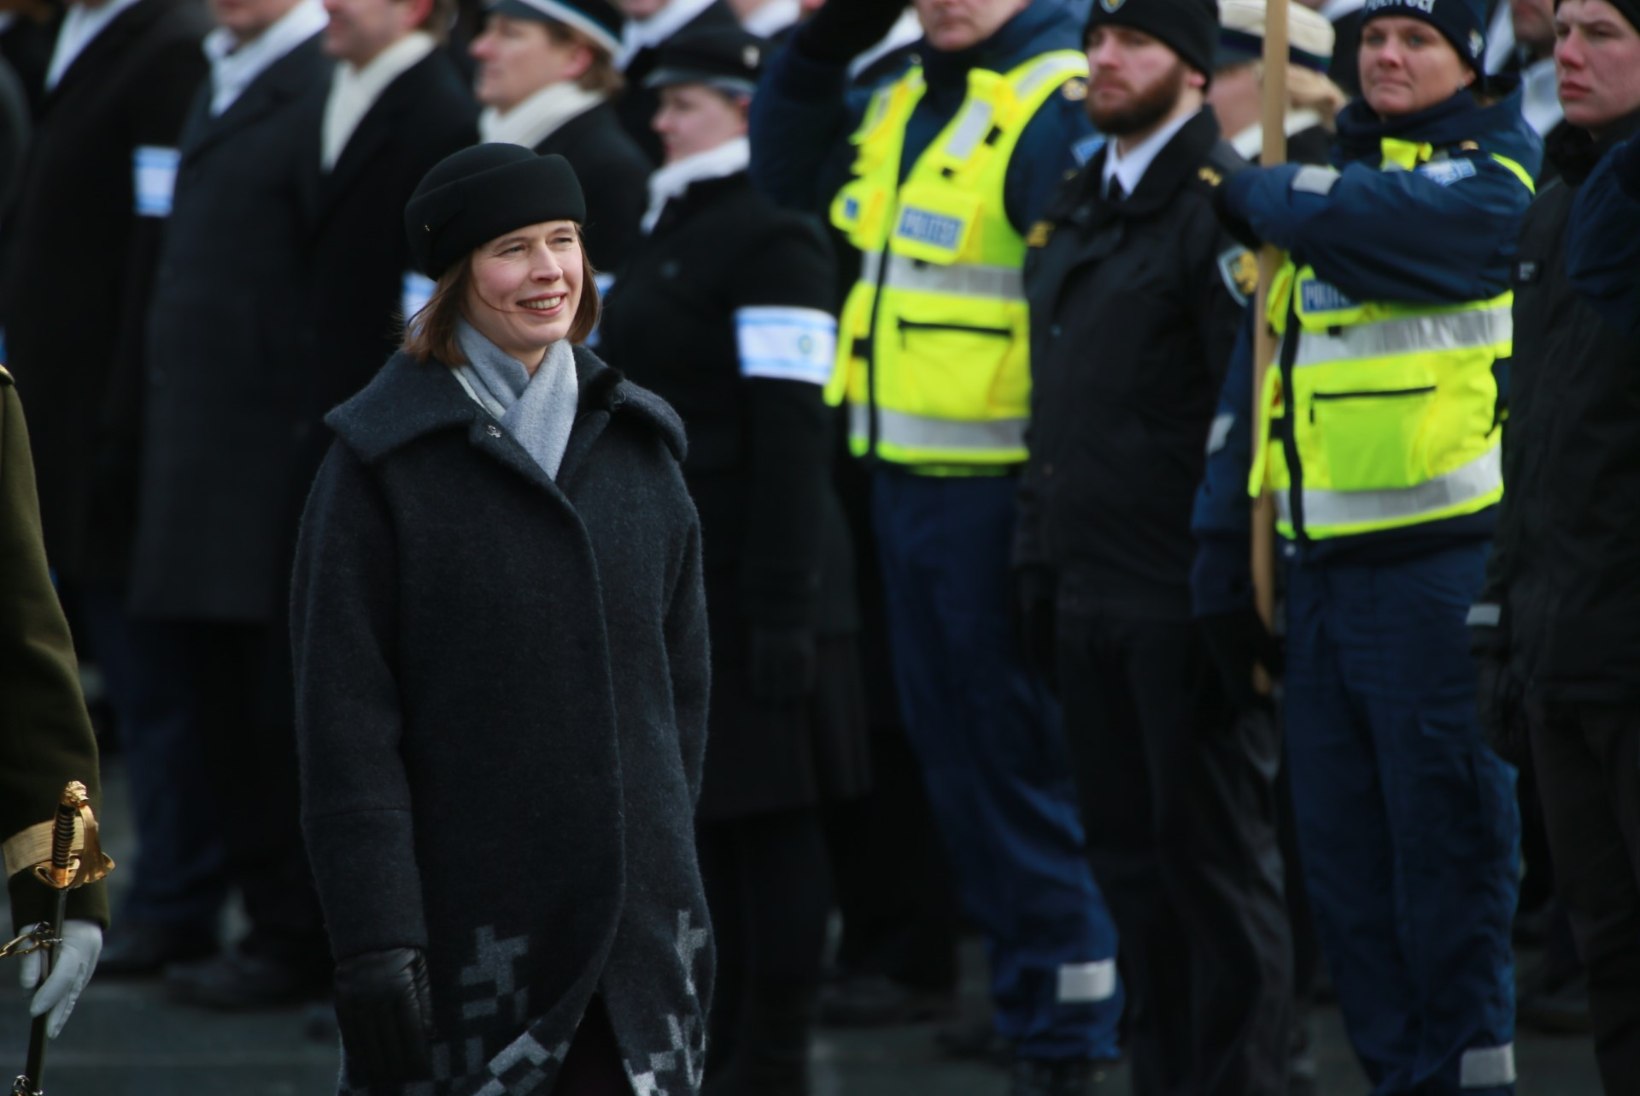 MIS JUHTUS? Kas president Kaljulaid magas maha Eesti riigihümni alguse?